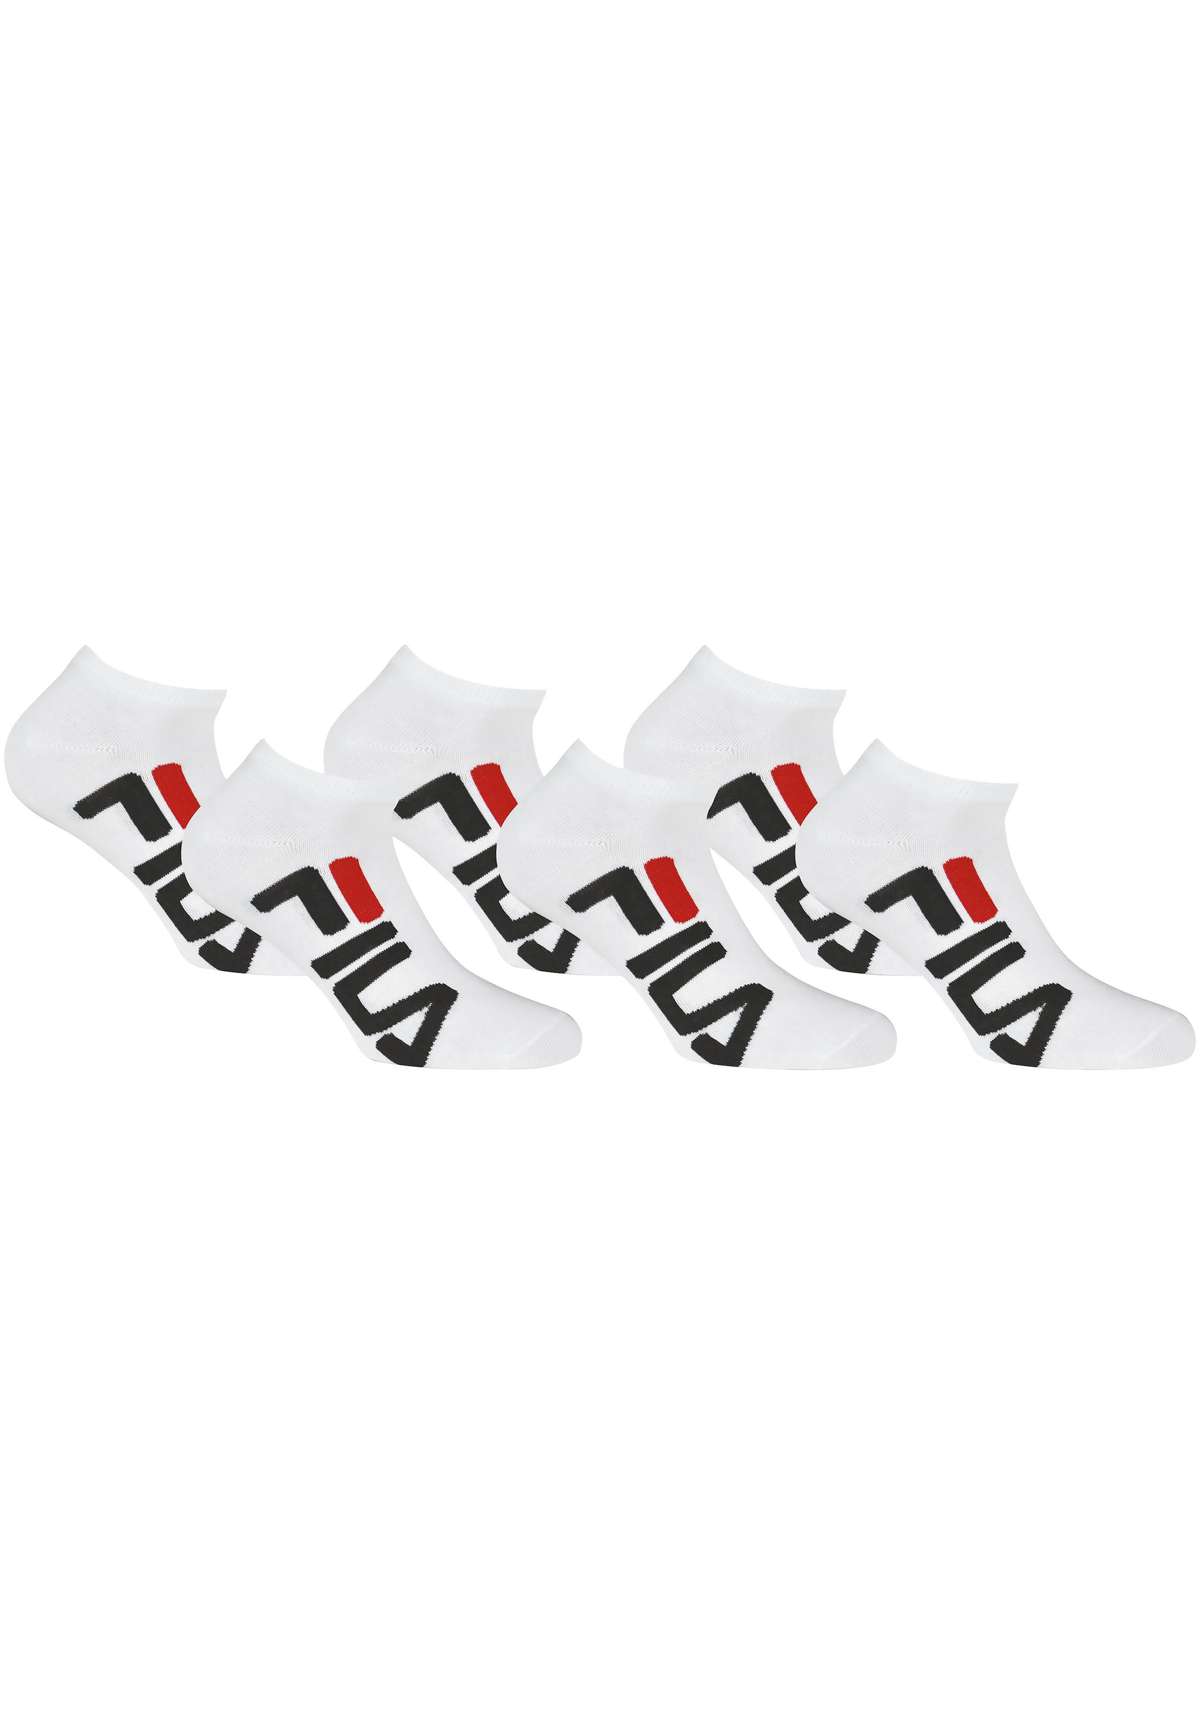 Носки-кроссовки, (упаковка, 6 пар)